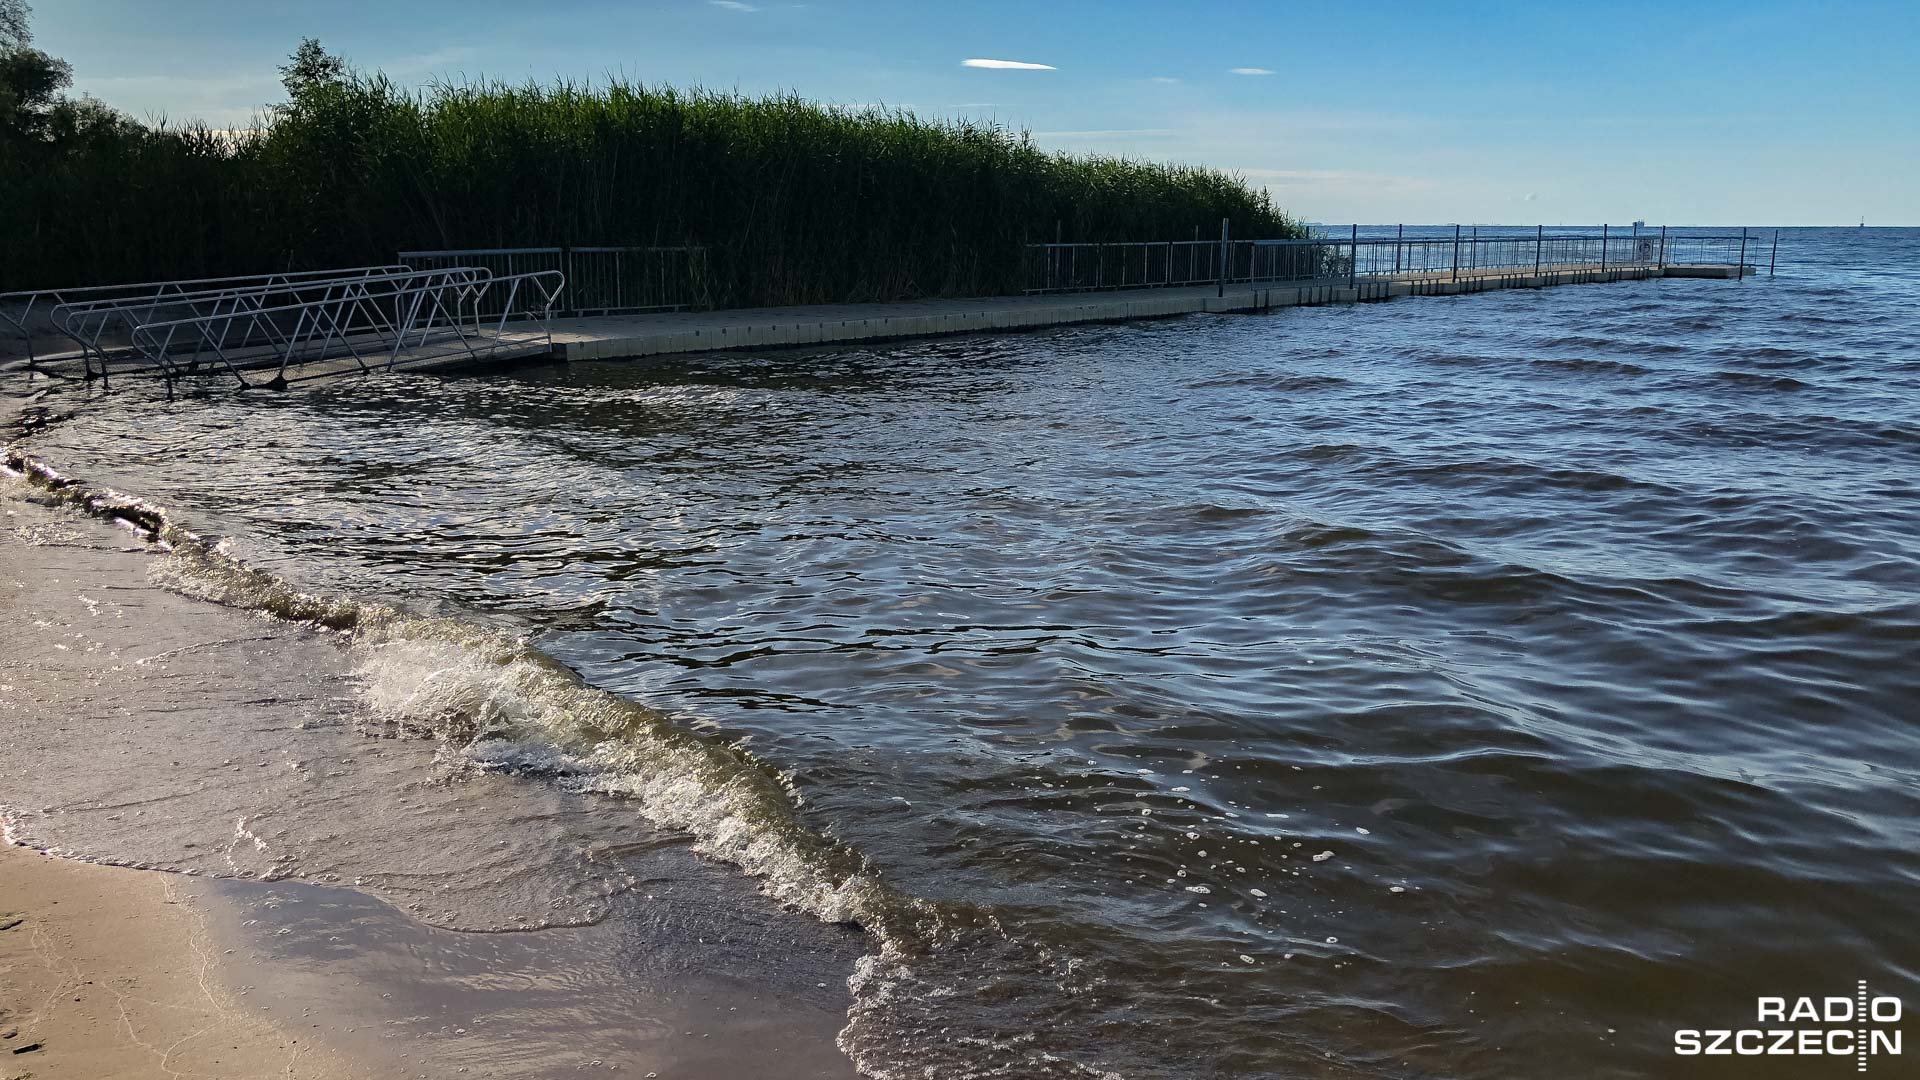 Kąpielisko w Trzebieży oraz Stepnicy zamknięte, w Świnoujściu w Bałtyku można kąpać się bez obaw.